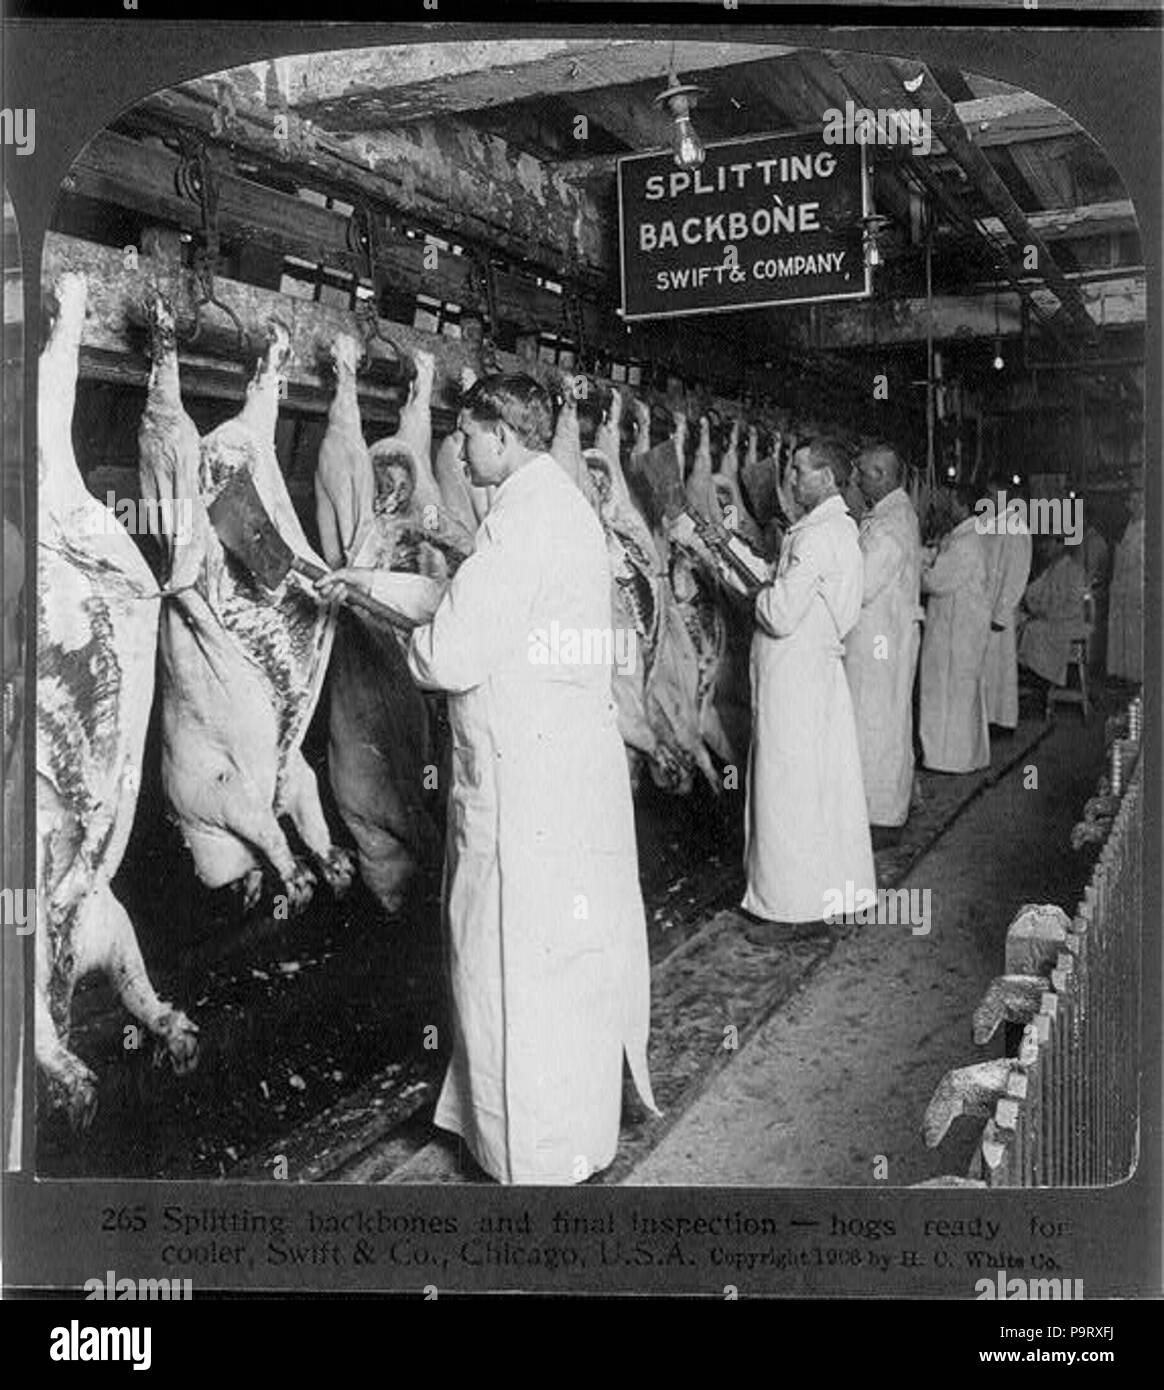 Meat inspection Banque d'images noir et blanc - Alamy